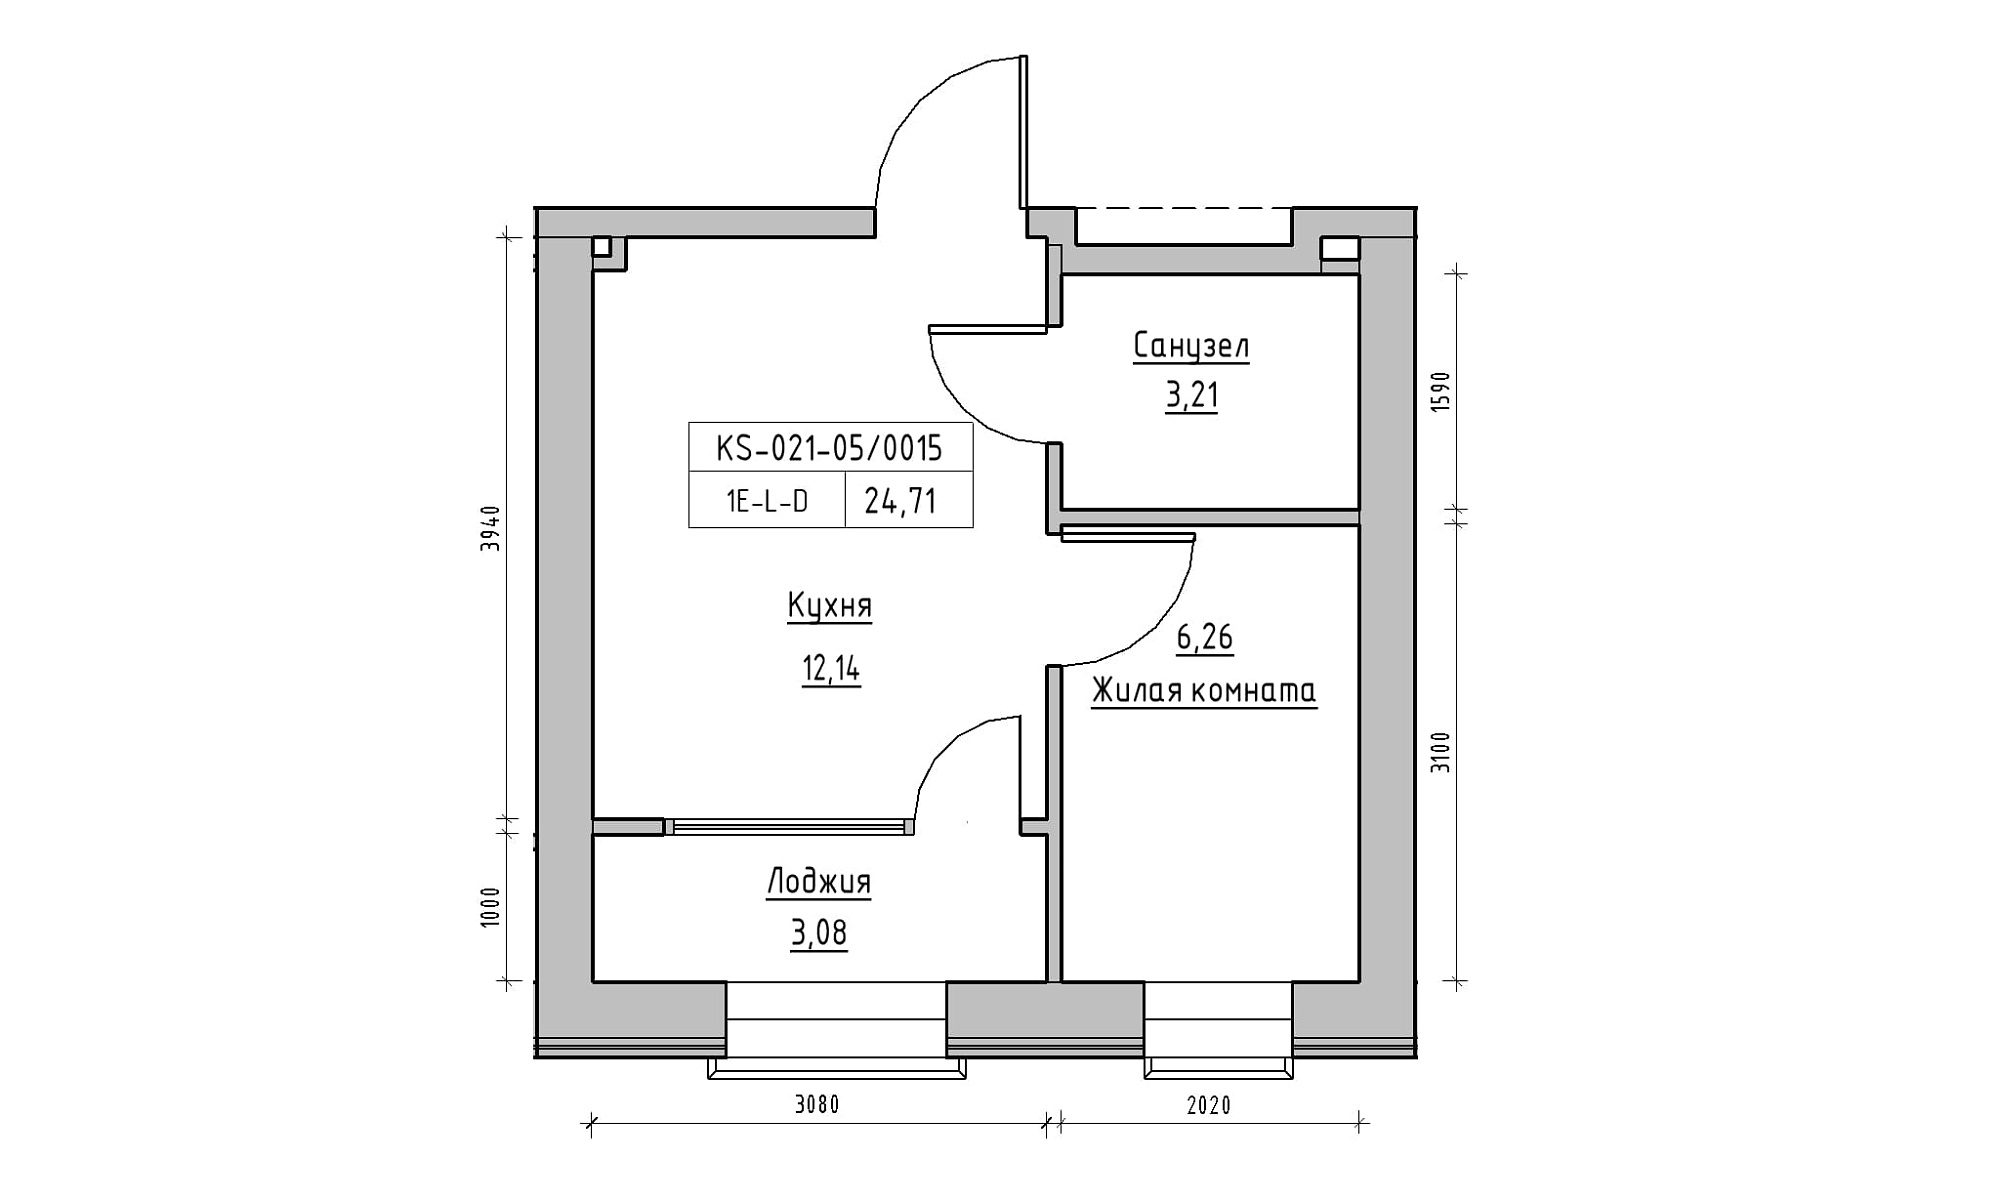 Планування 1-к квартира площею 24.71м2, KS-021-05/0015.